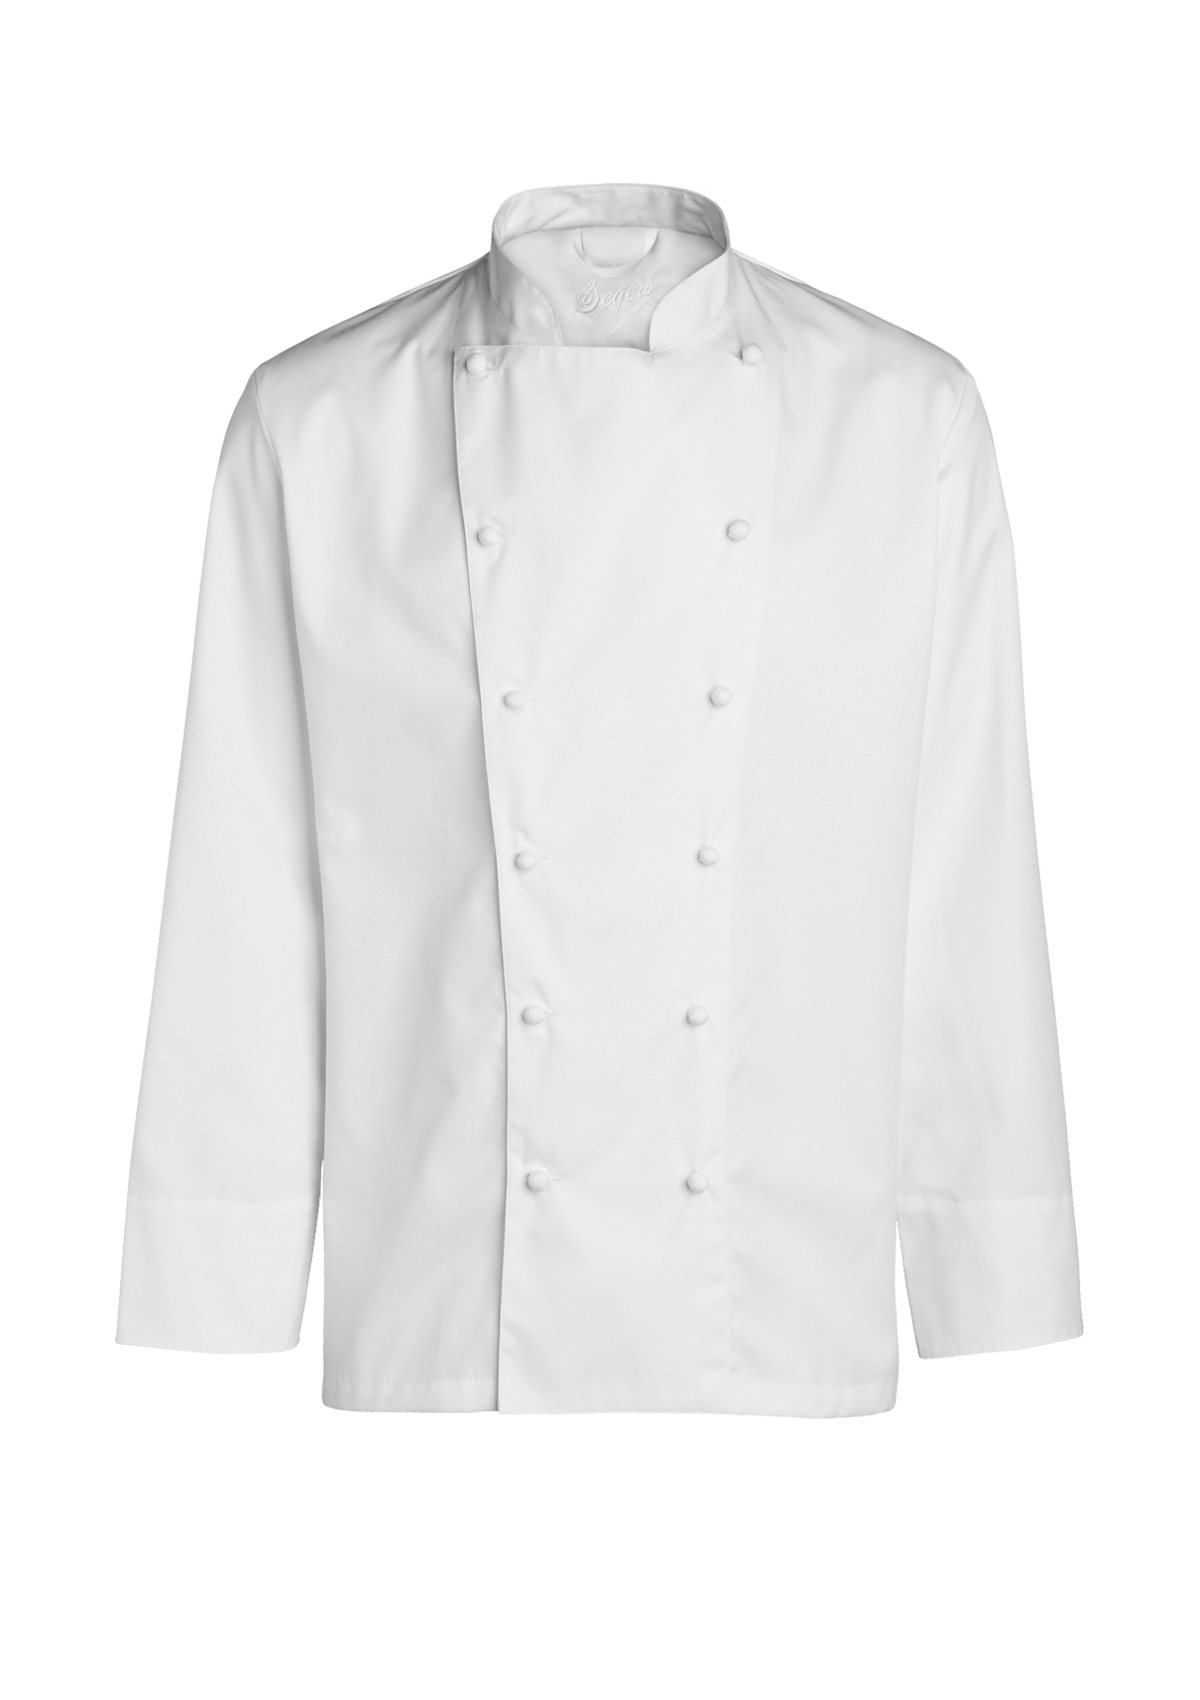 Exclusive Men's Chef Jacket. Segers | Cookniche